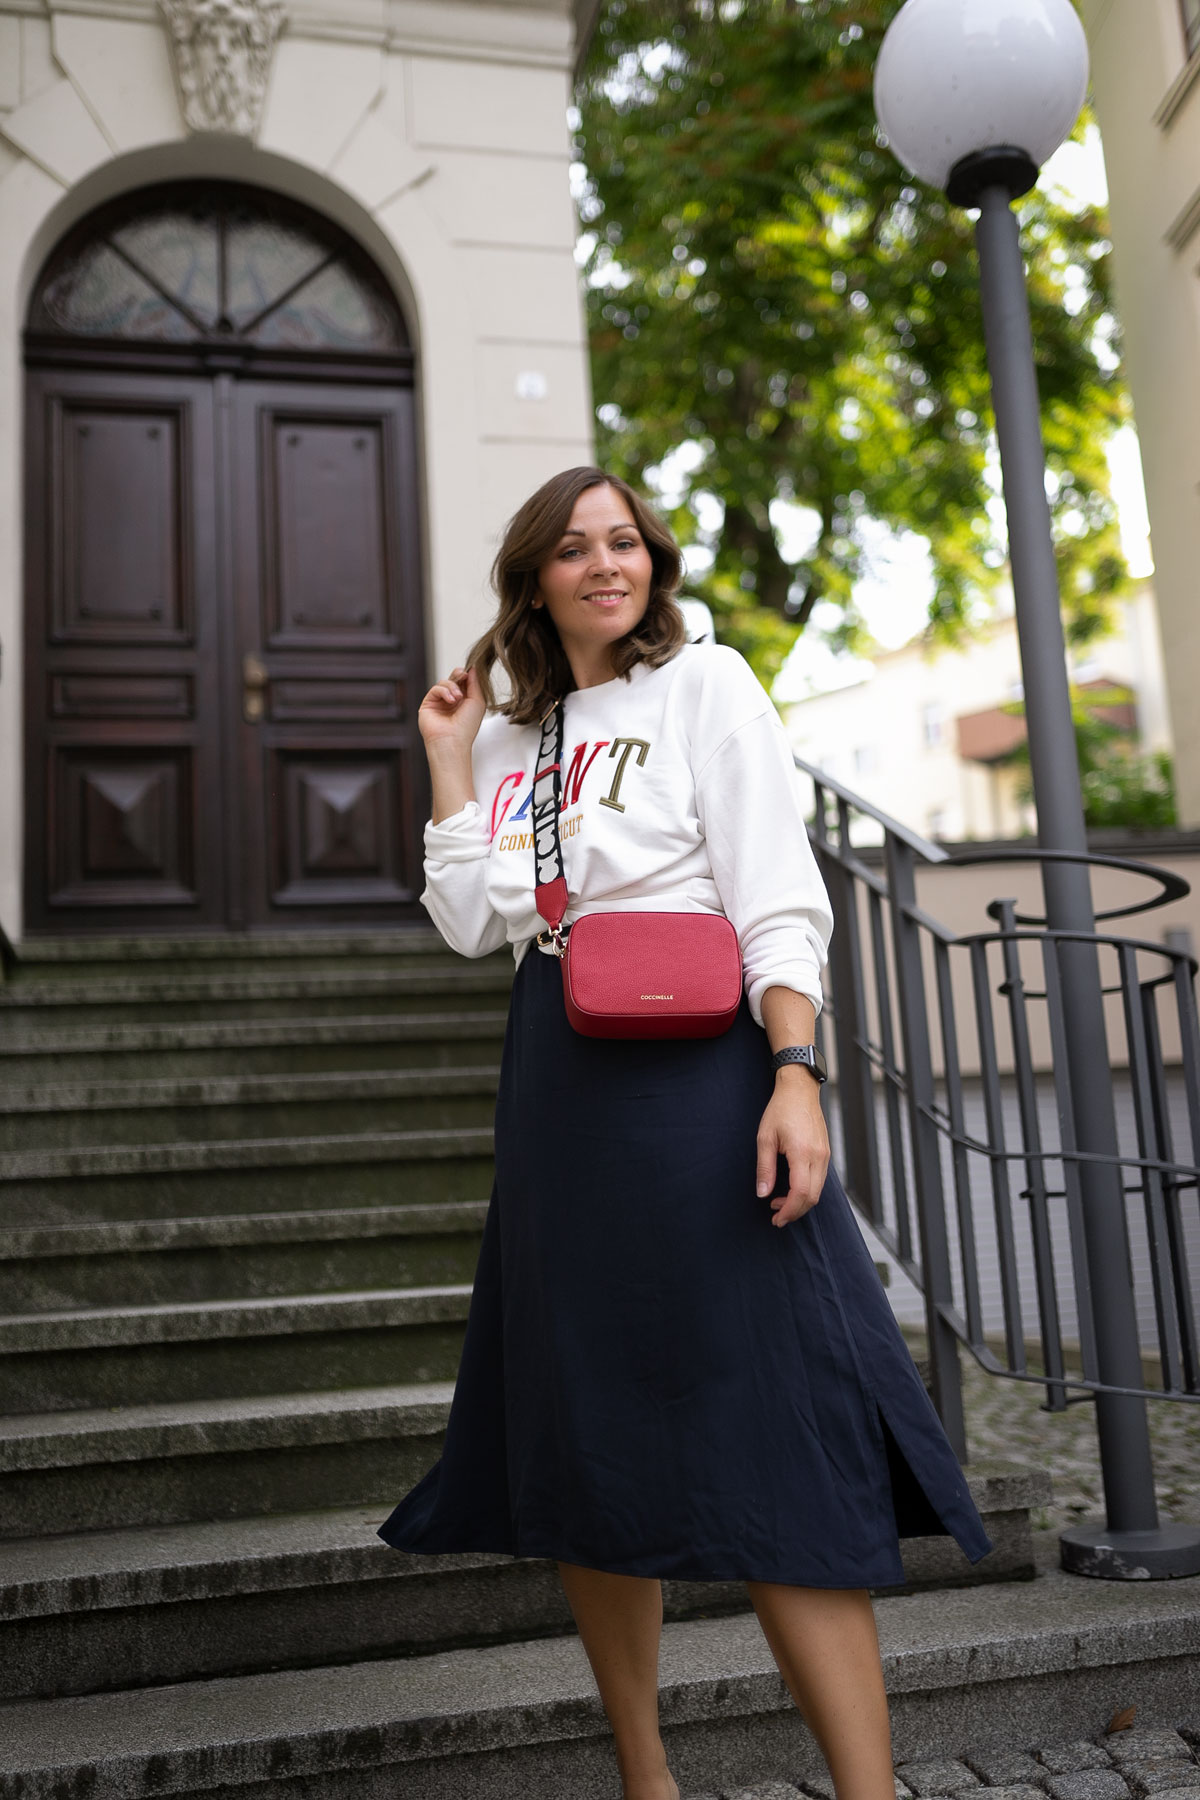 eBay Marken Outlet im Test - ein Sommer Outfit mit Midikleid, Coccinelle Tasche und Gant Sweater findet ihr auf dem Modeblog. | www.kleidermaedchen.de